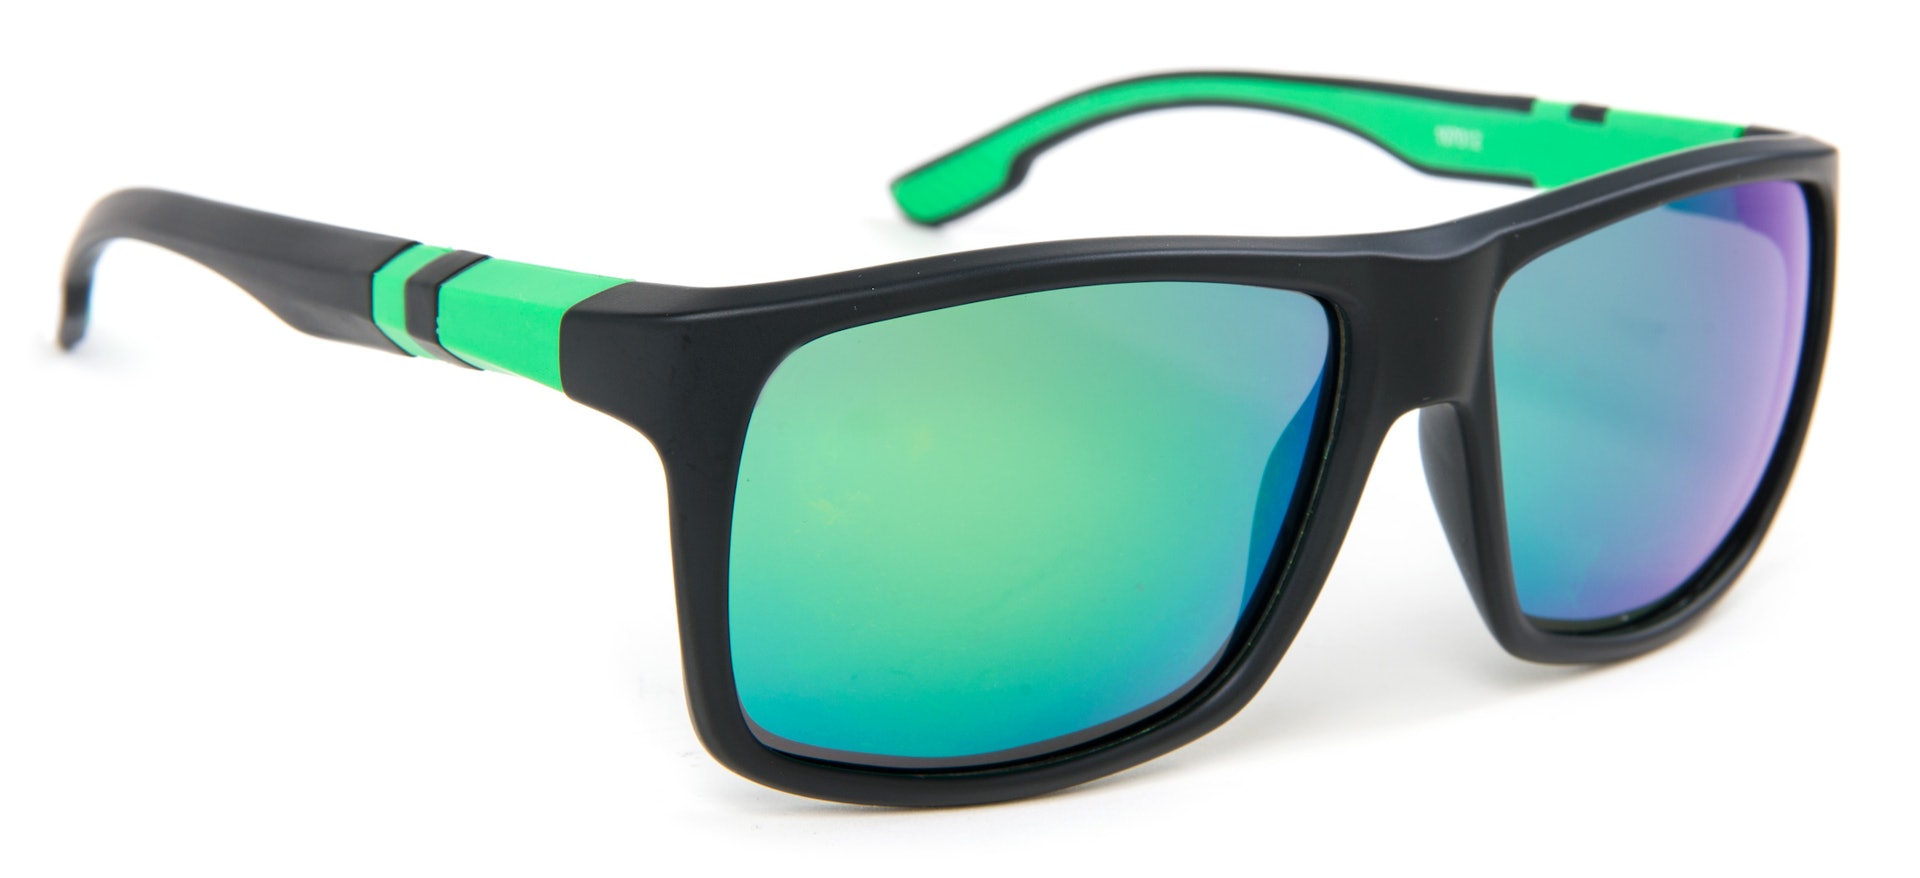 LPX Sunglasses - Grey Lens (bilde 1 av 2)